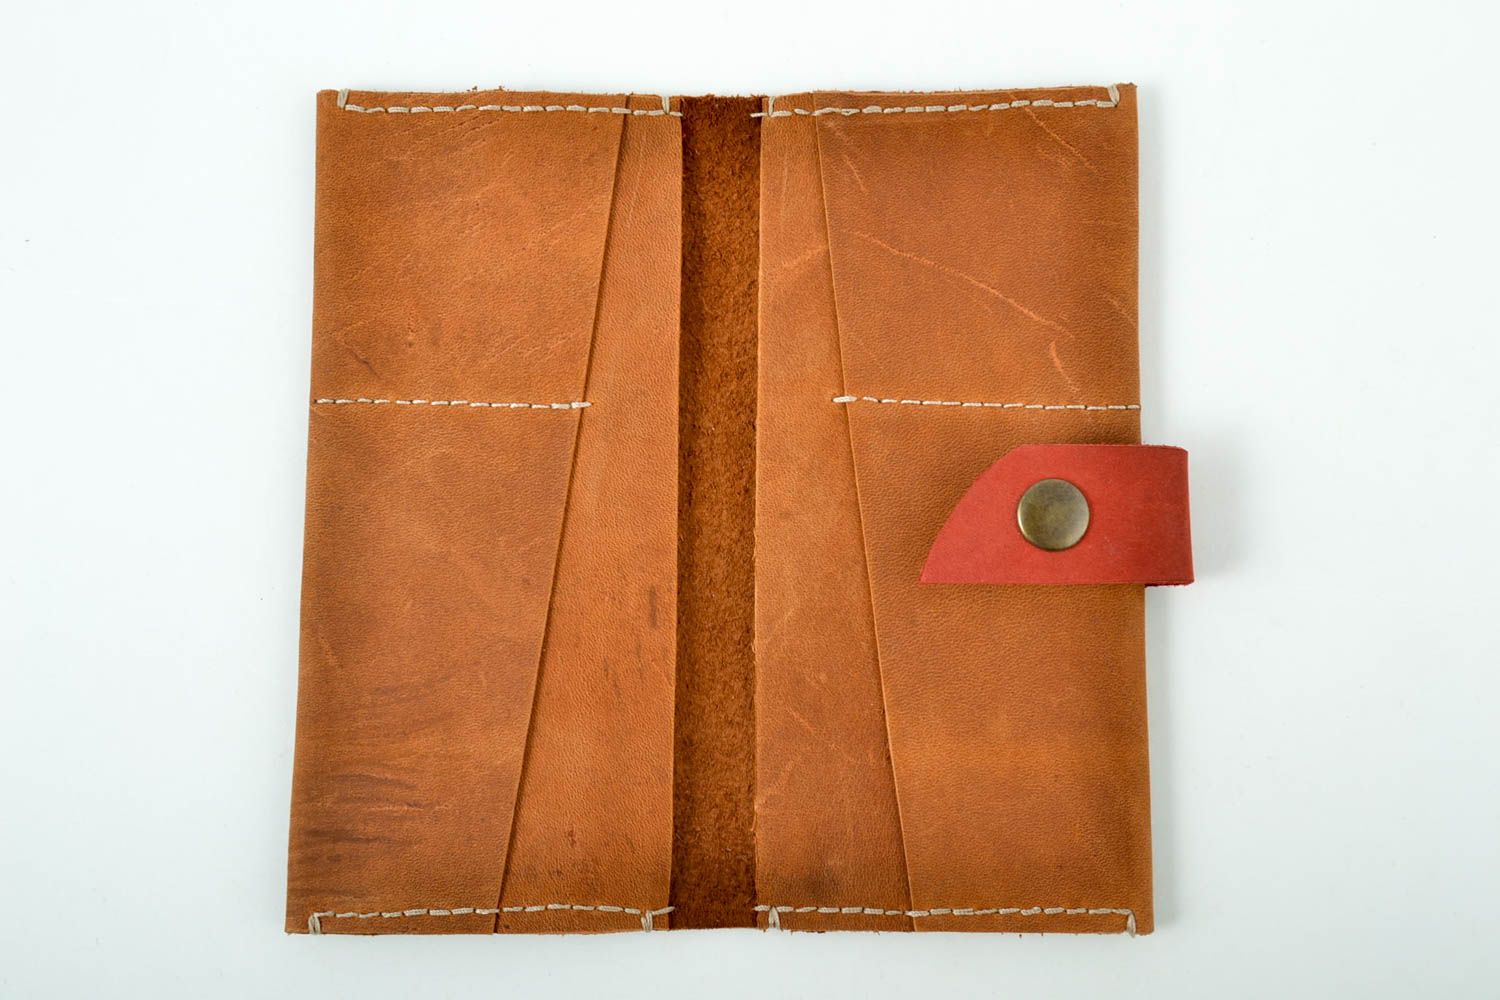 Кошелек ручной работы кожаный кошелек стильный коричневый кожаный аксессуар фото 3